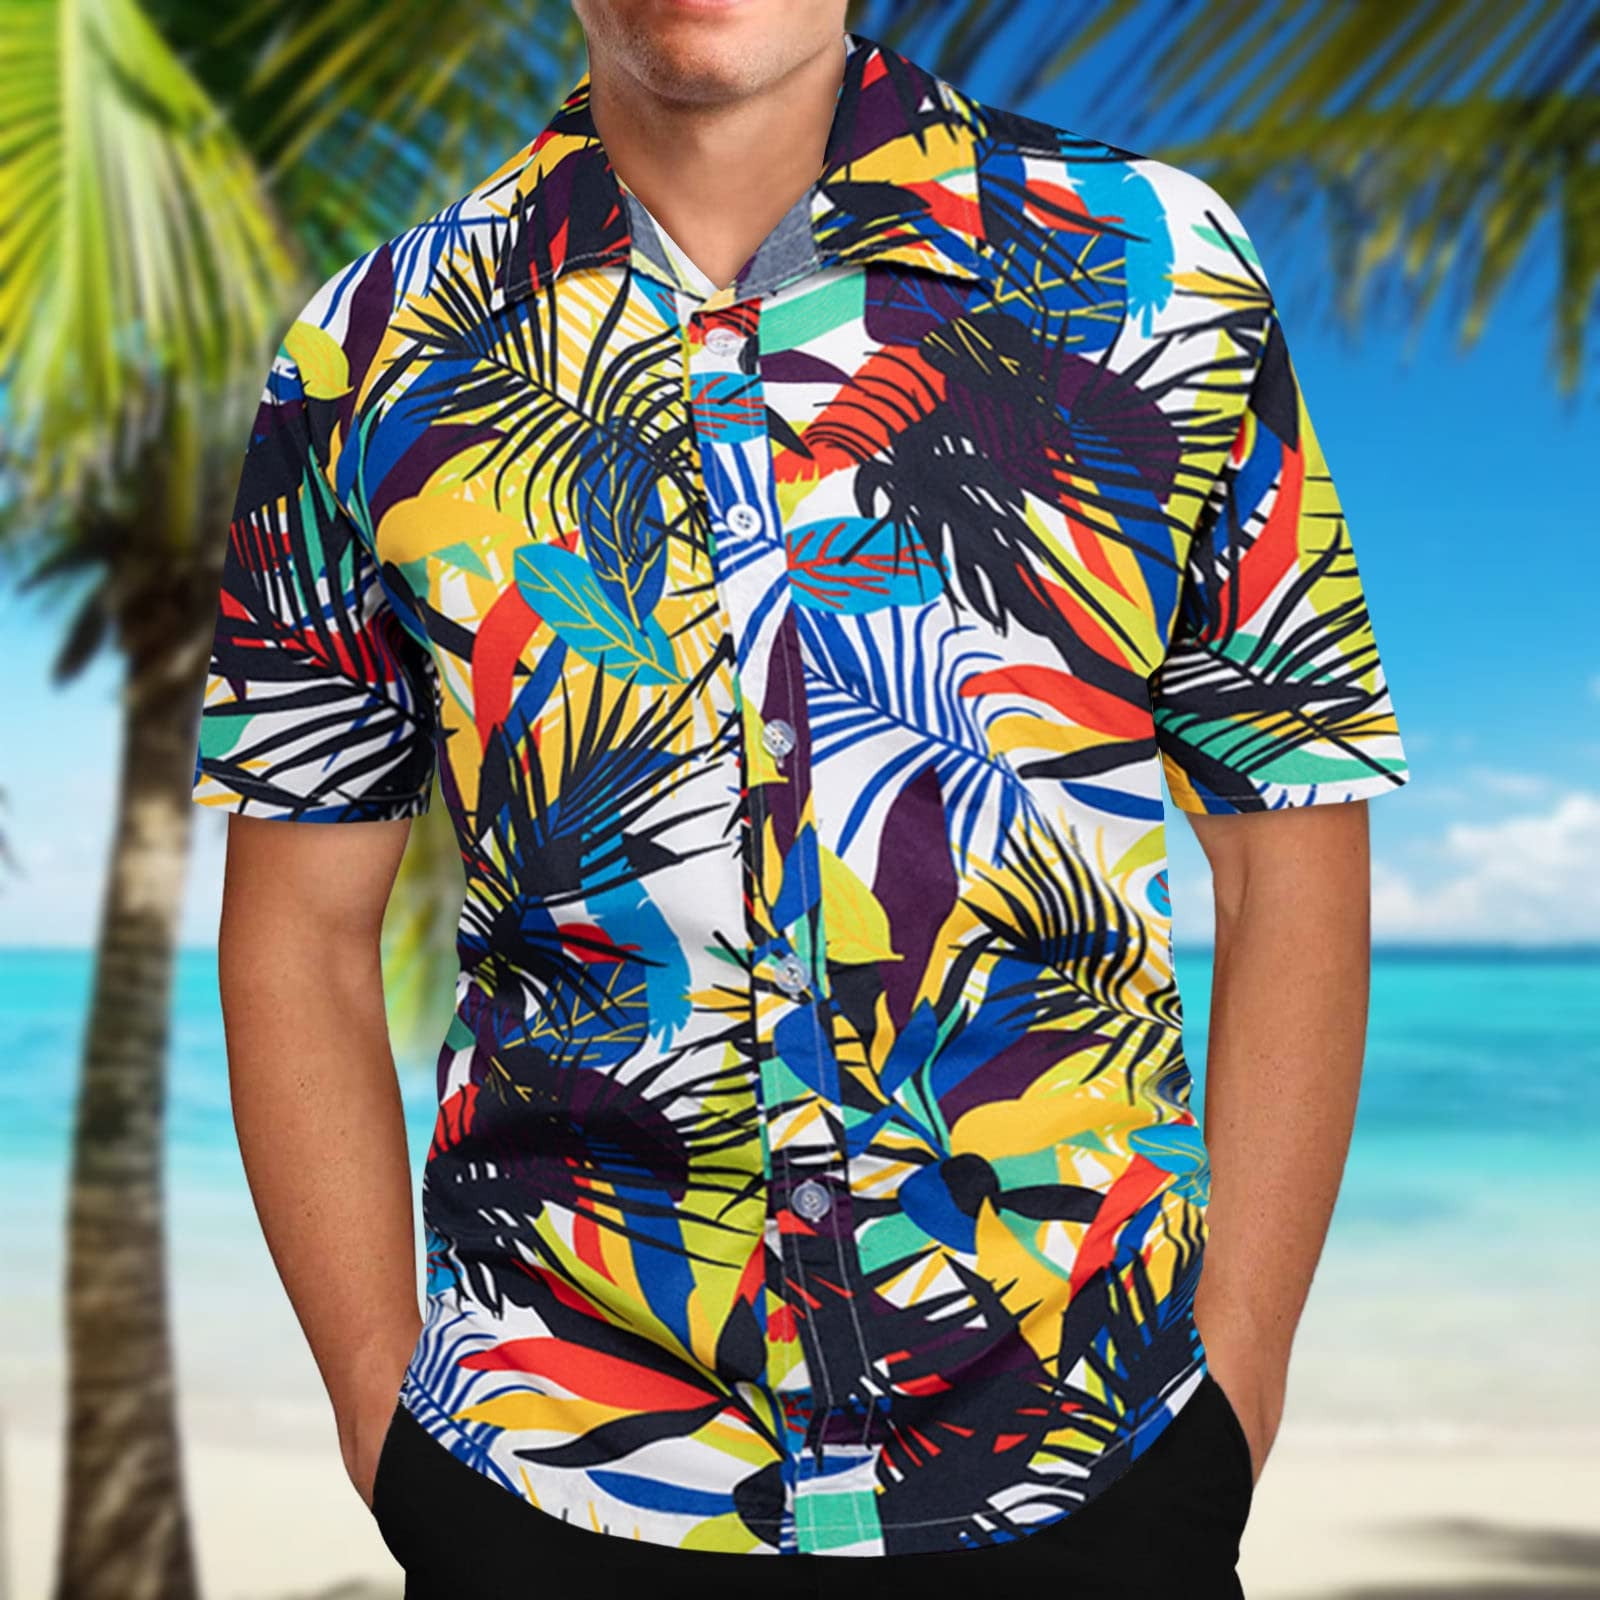 Zxhacsj Mens Hawaii Floral Shirts Short Sleeve Moisture Wicking Dry Shirt Button Down Tropical Holiday Beach Shirt Slim Fit Dark Green Xxxxl, Men's